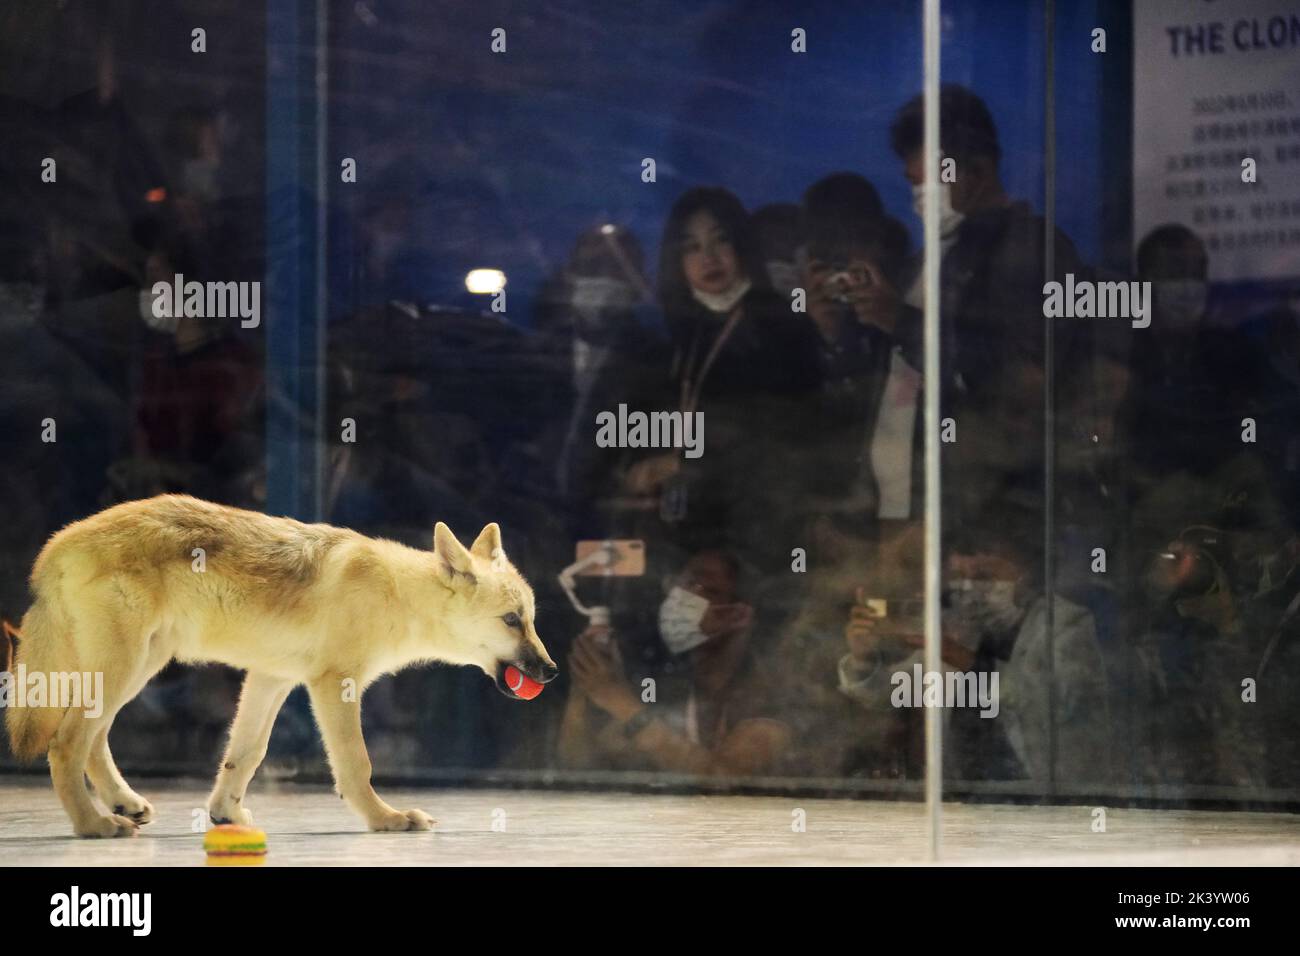 (220929) -- HARBIN, 29 de septiembre de 2022 (Xinhua) -- Foto tomada el 28 de septiembre de 2022 muestra un lobo ártico clonado en Harbin Polarland, Harbin, capital de la provincia de Heilongjiang, en el noreste de China. Un lobo ártico clonado se reunió con el público en Harbin Polarland, en la provincia de Heilongjiang en el noreste de China últimamente. Su célula donante vino de las muestras de piel de un lobo ártico salvaje llamado Maya, quien había sido introducido desde Canadá a Harbin Polarland. Su ovocito era de una perra en estro y su madre sustituta era una beagle. Ahora el cachorro de lobo está en buenas condiciones de salud y vive con su madre substituta en Har Foto de stock